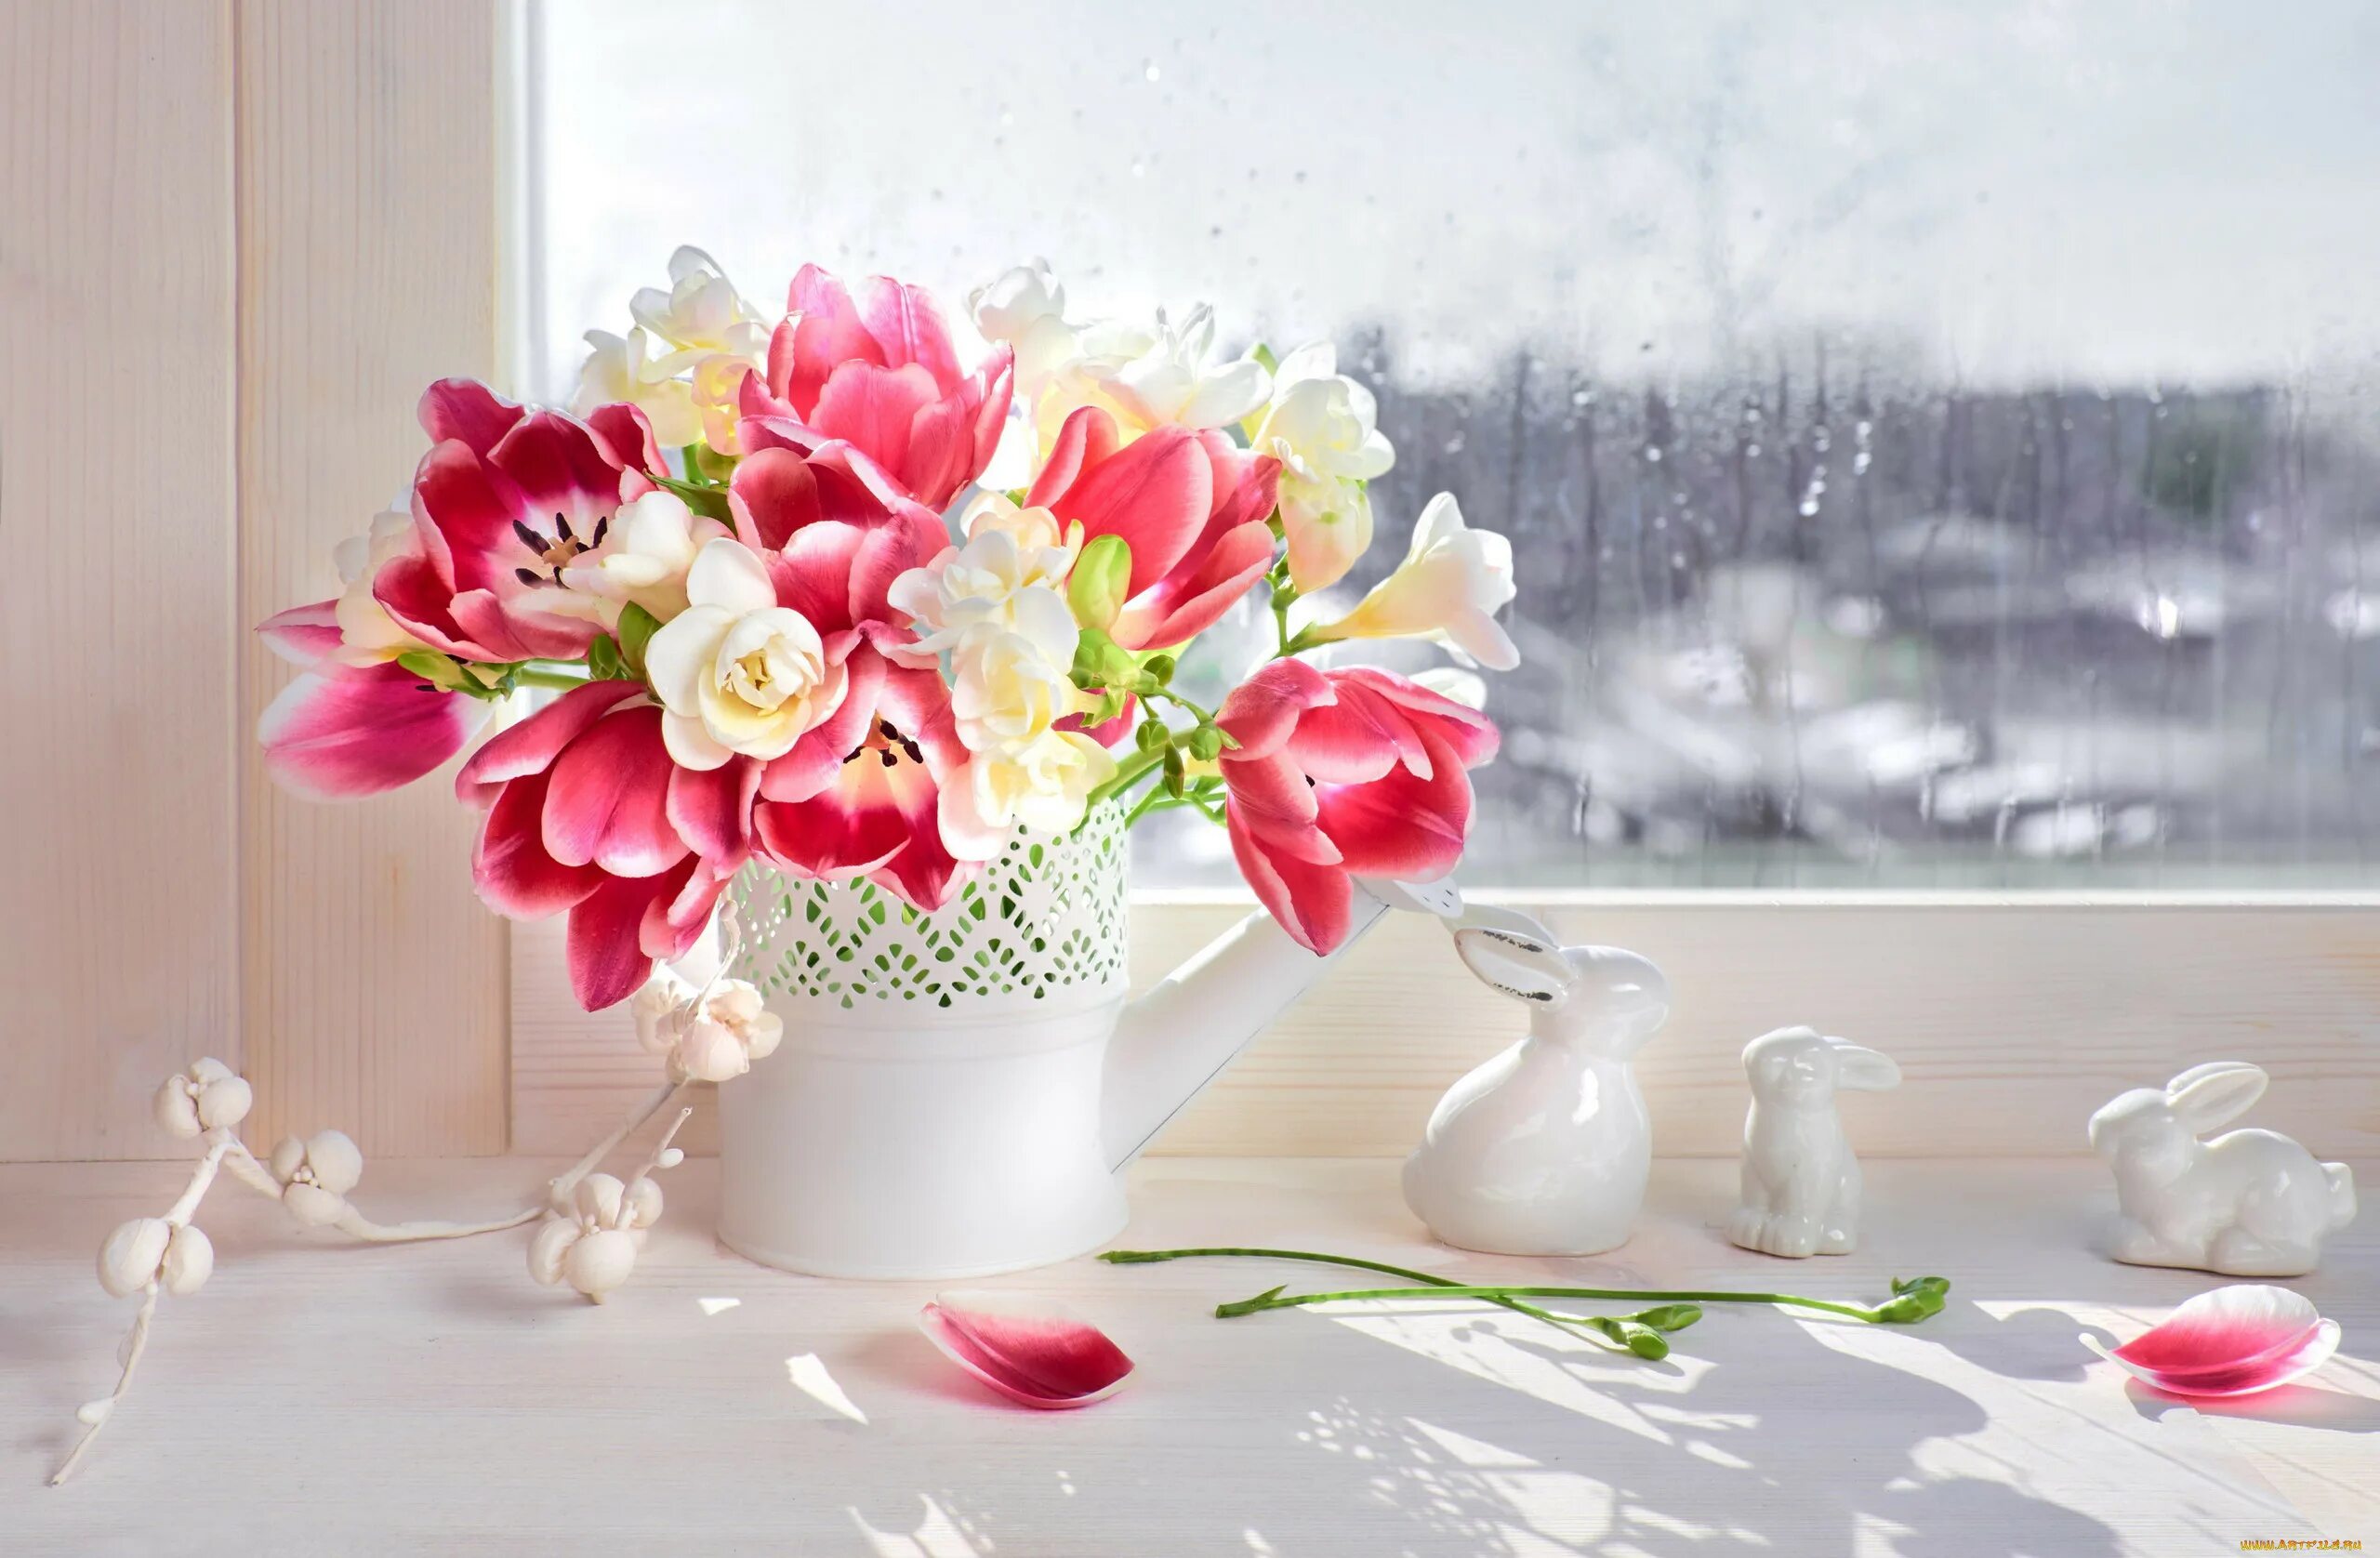 Красивые цветы в вазах. Цветы на окне. Шикарные цветы в вазе. Тюльпаны в вазе. Весенний букет цветов утром